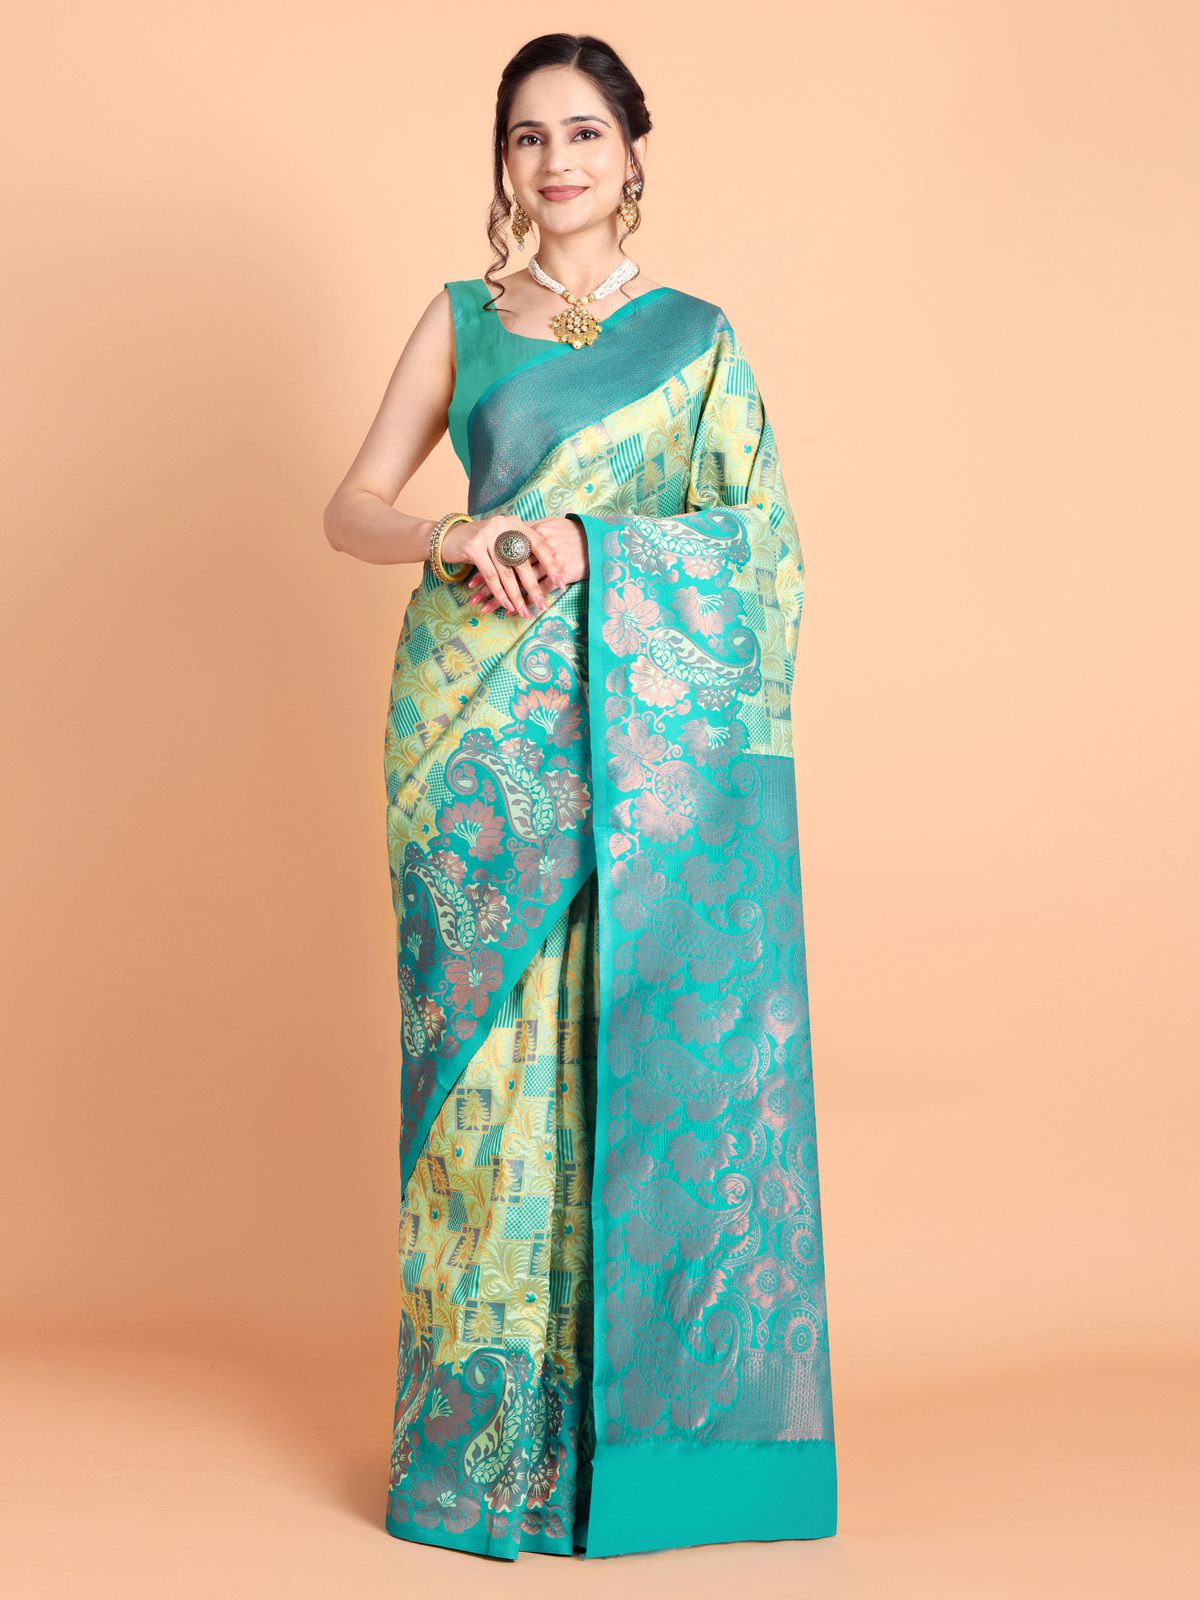     			Taslar Silk Blend Embellished Saree With Blouse Piece - Beige ( Pack of 1 )